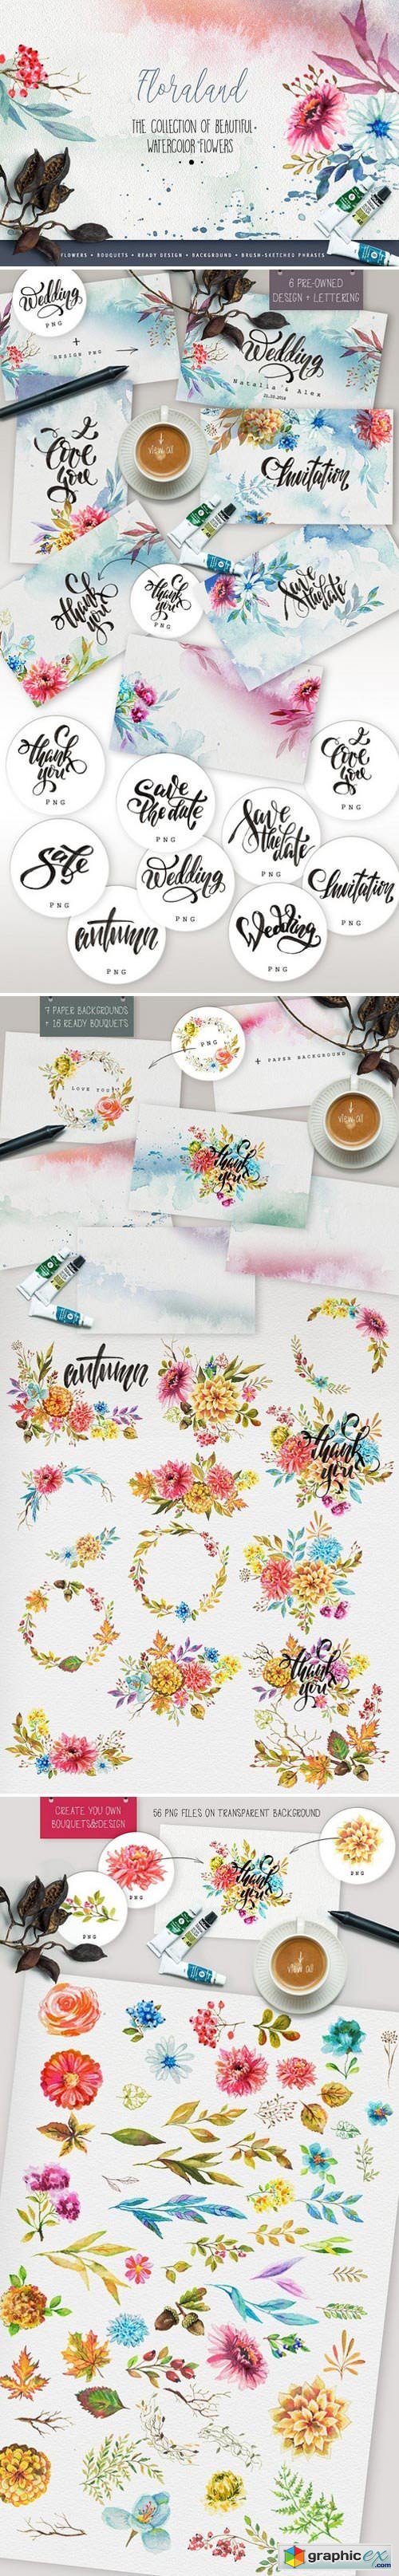 Designer's watercolor bundle